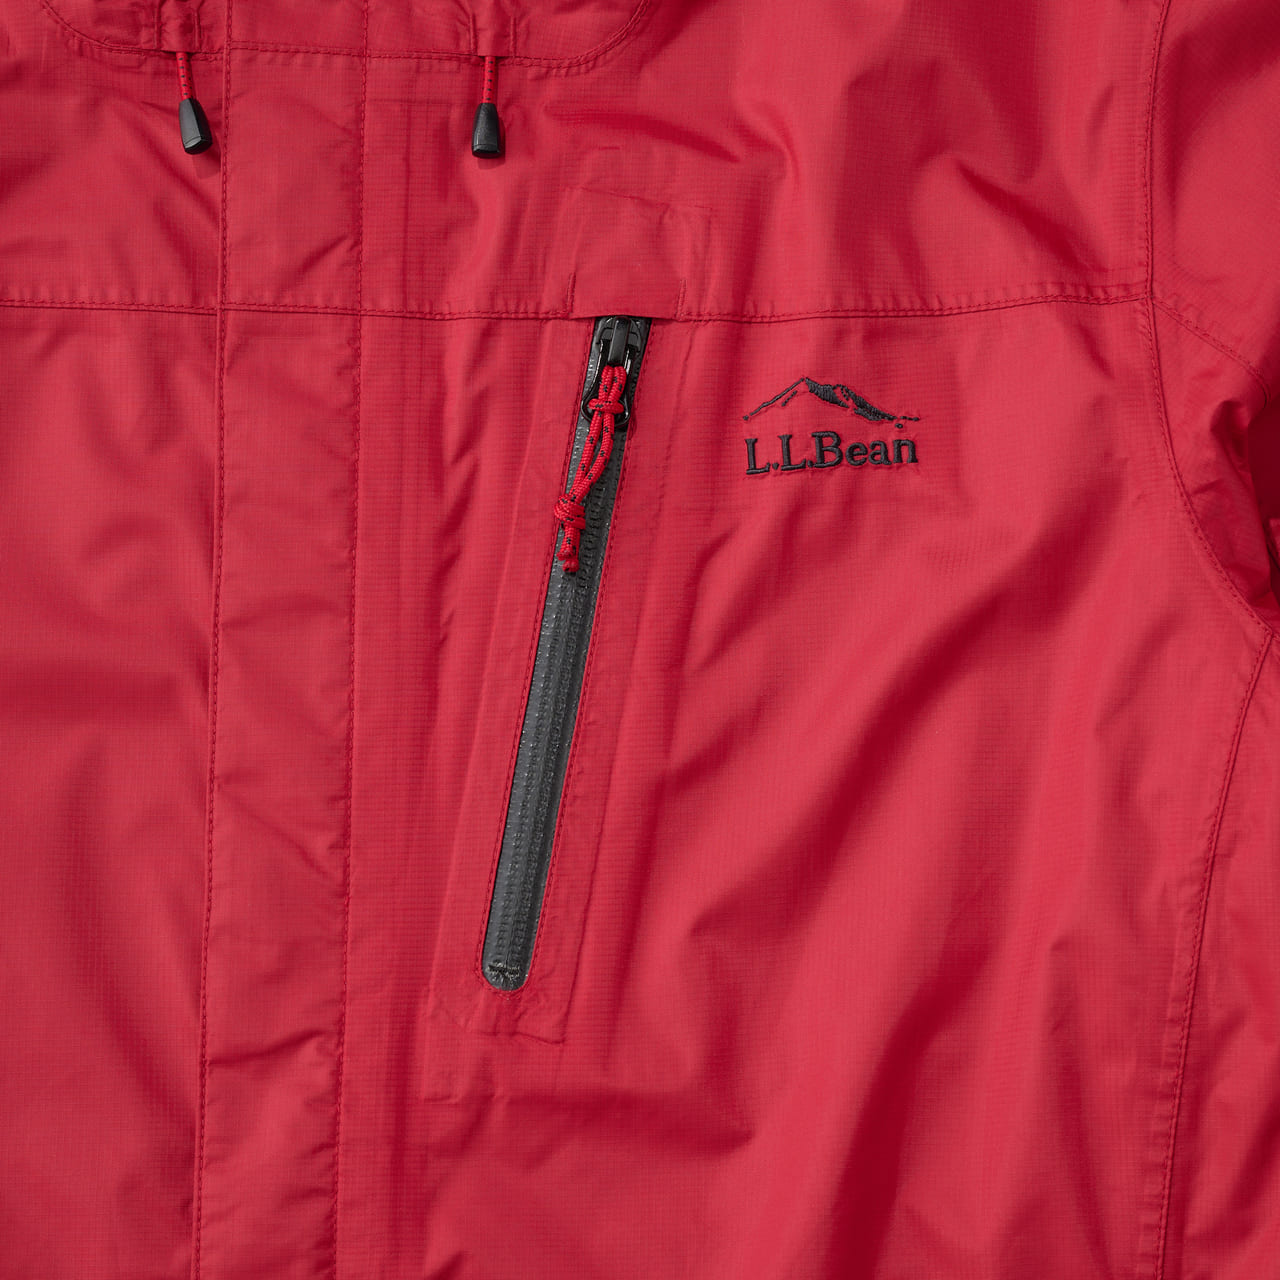 スタイリストが試してよかったオススメのレインジャケット　エル・エル・ビーン　L.L.Bean　“Trail Model Rain Jacket”　胸のロゴ